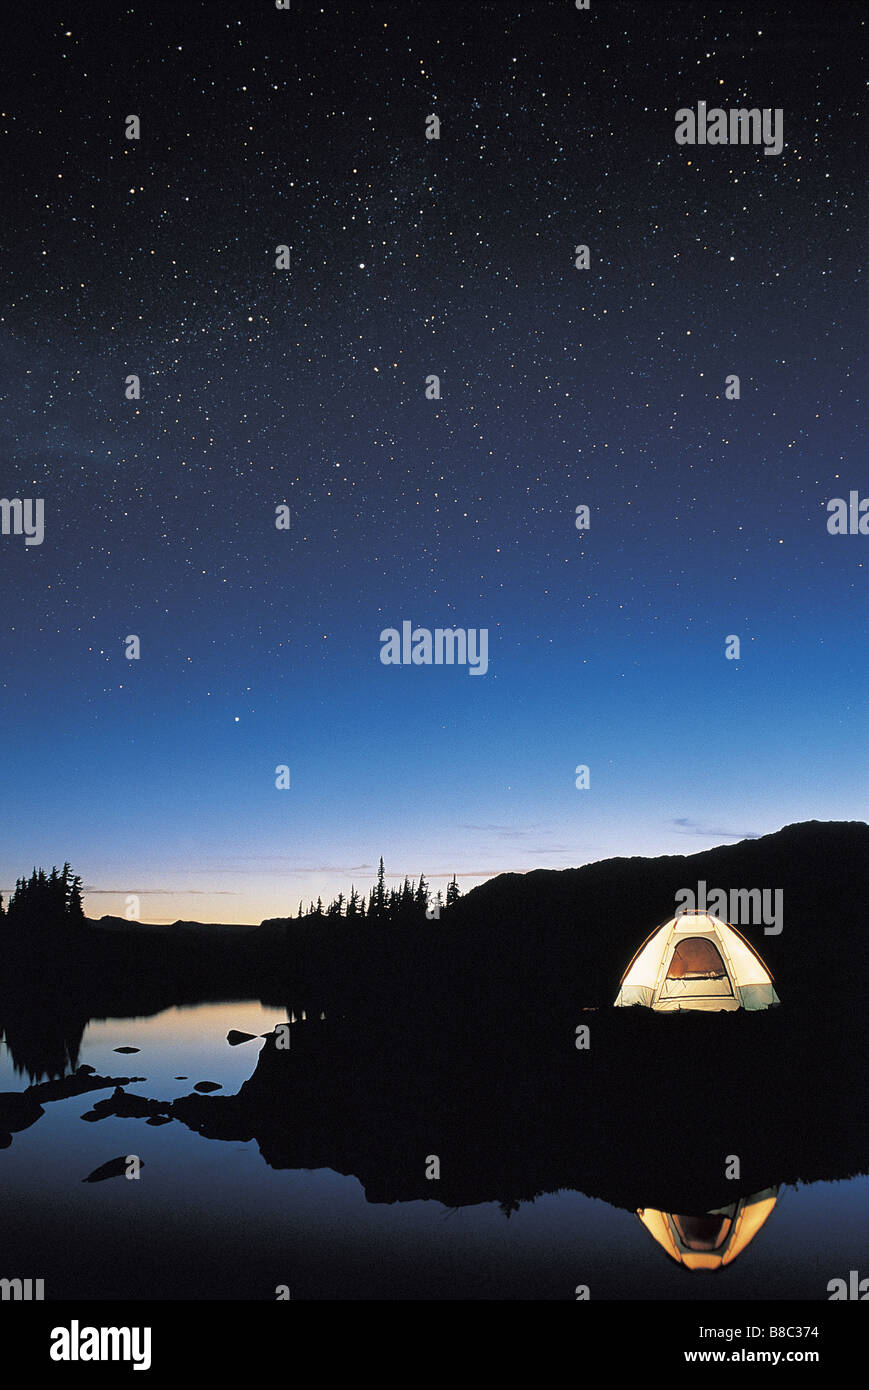 FL5442, David Nunuk; Illuminated Tent  Night Under Starry Sky Stock Photo